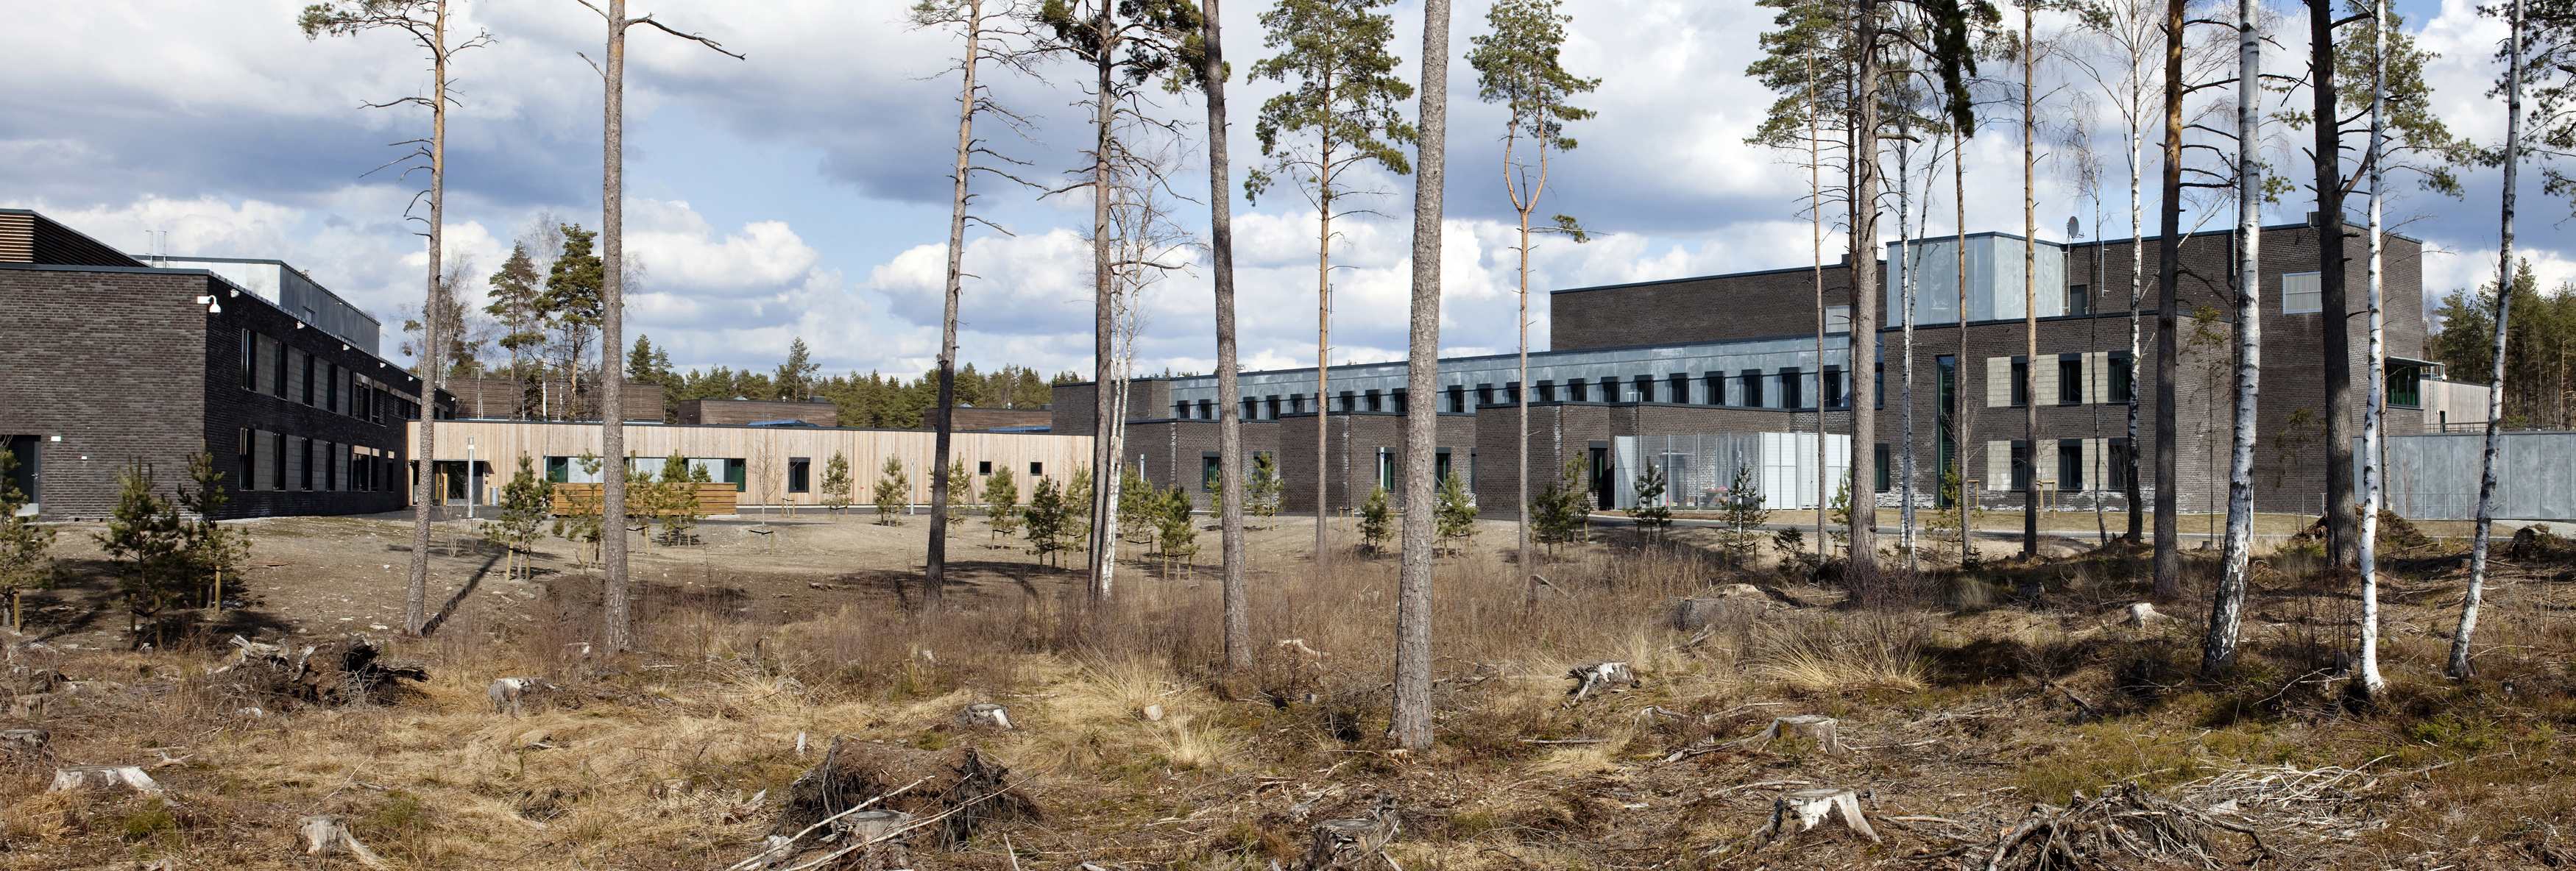 Η πιο πολυτελής φυλακή του κόσμου για τον μακελάρη της Νορβηγίας